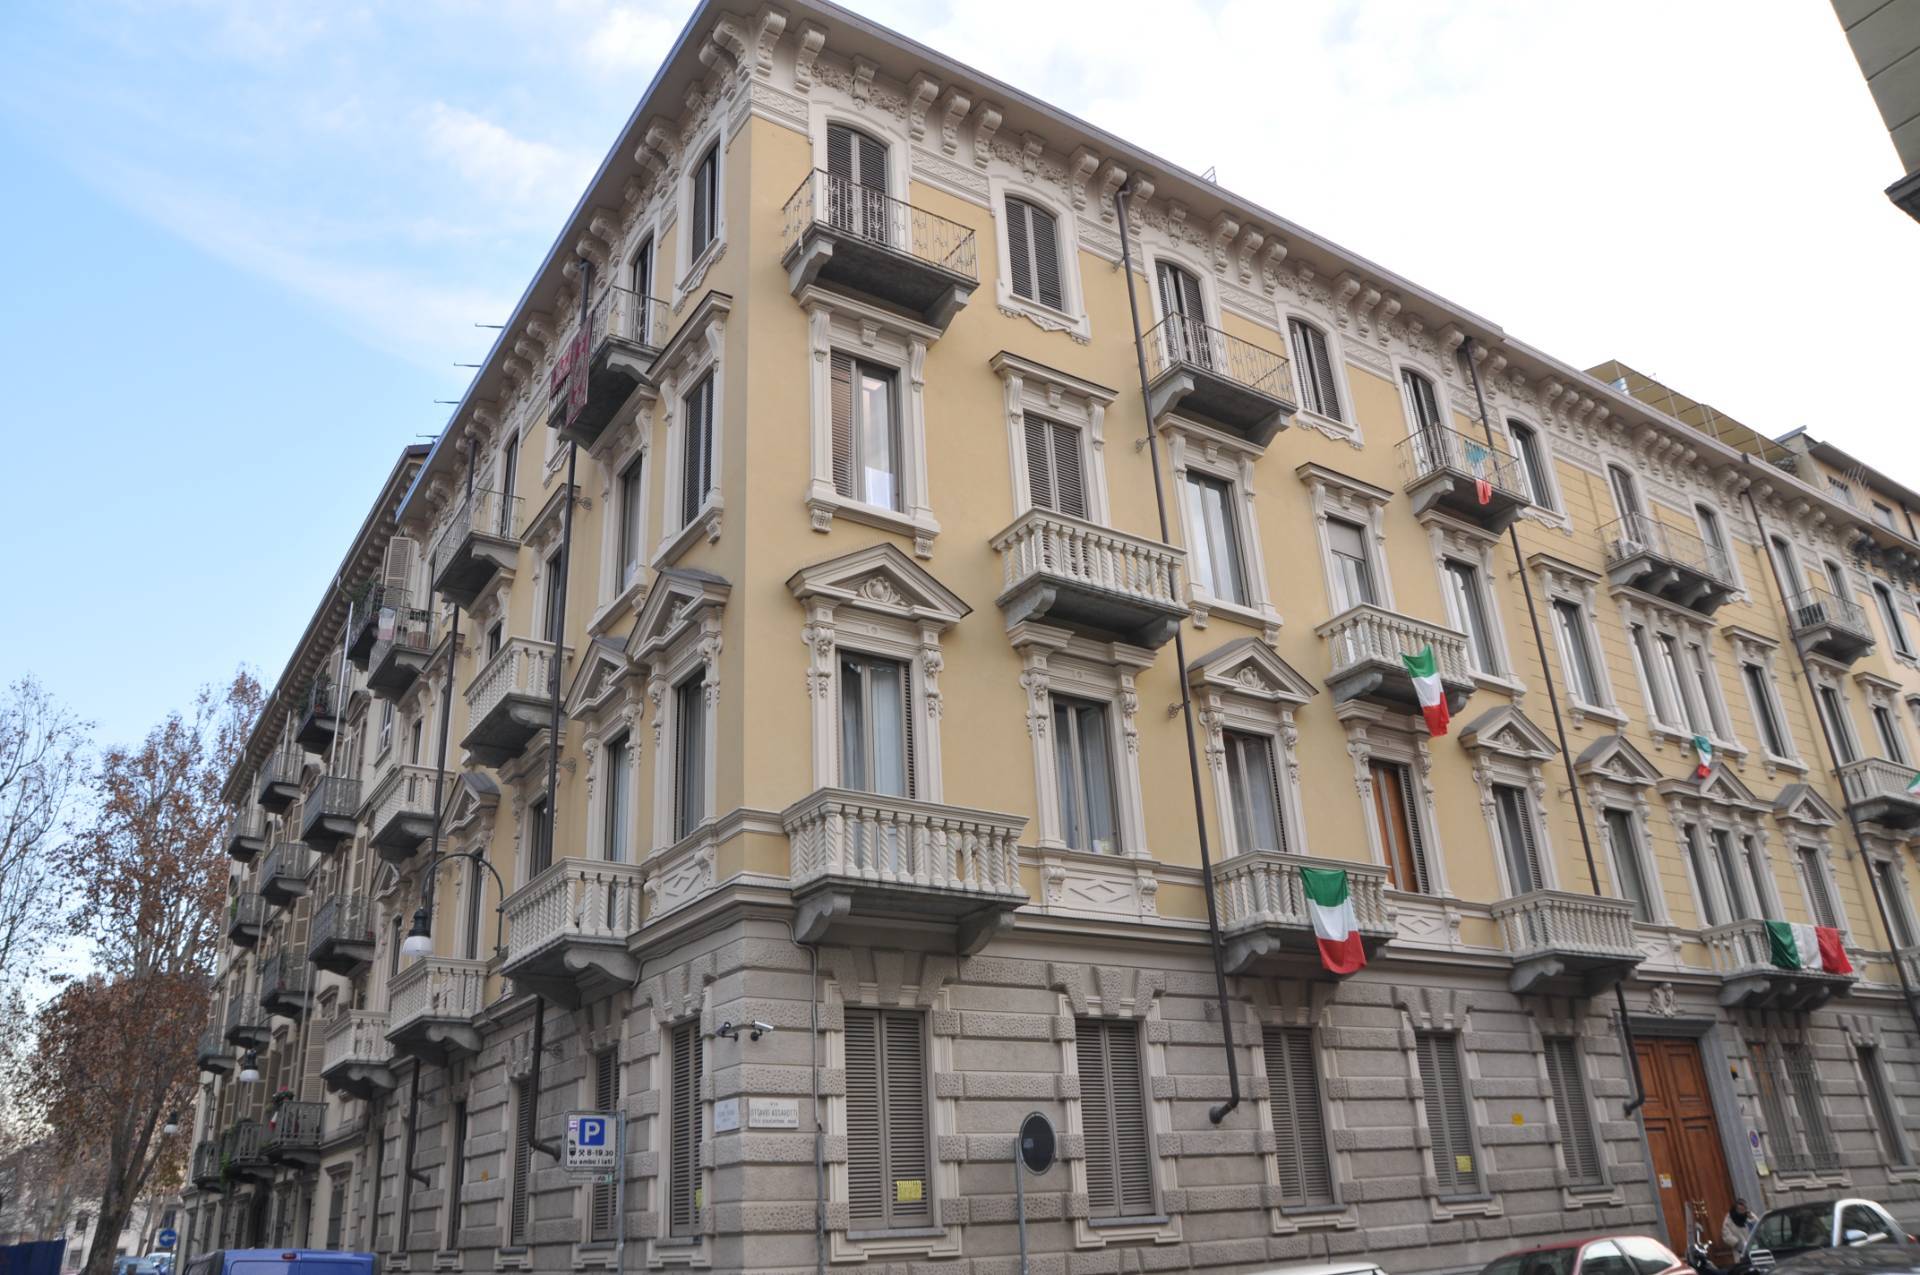 Appartamento arredato in affitto, Torino centro